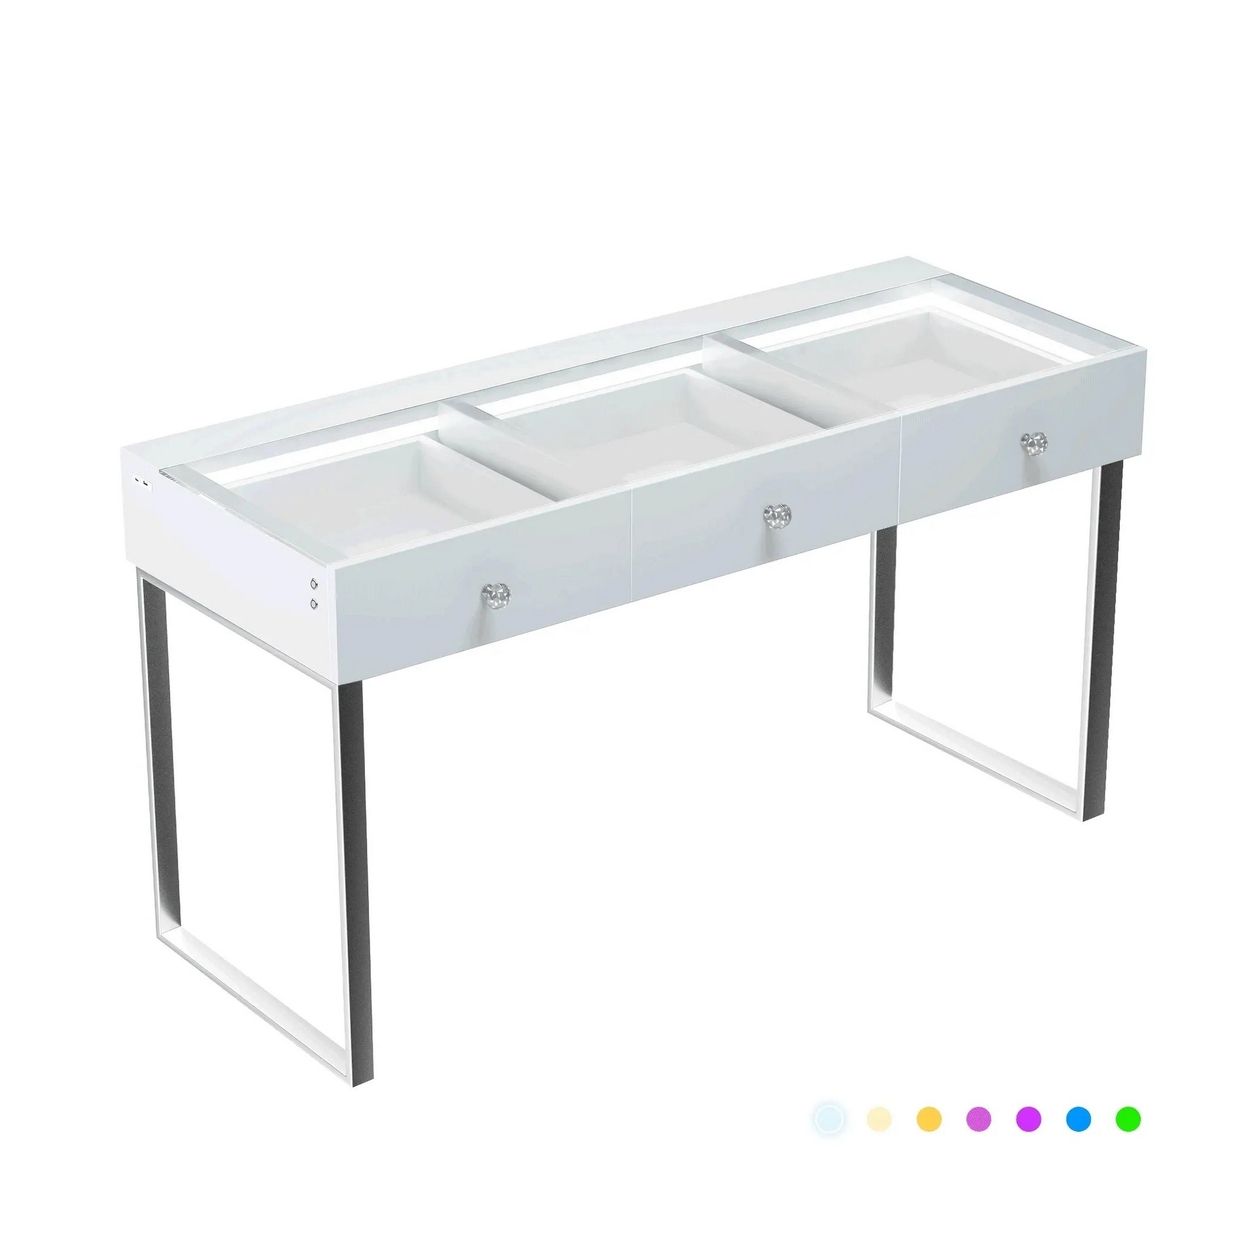 Yli 47 Inch Vanity Desk Pro, 3 Drawers, USB, RGB, Glass Tabletop, White - Saltoro Sherpi